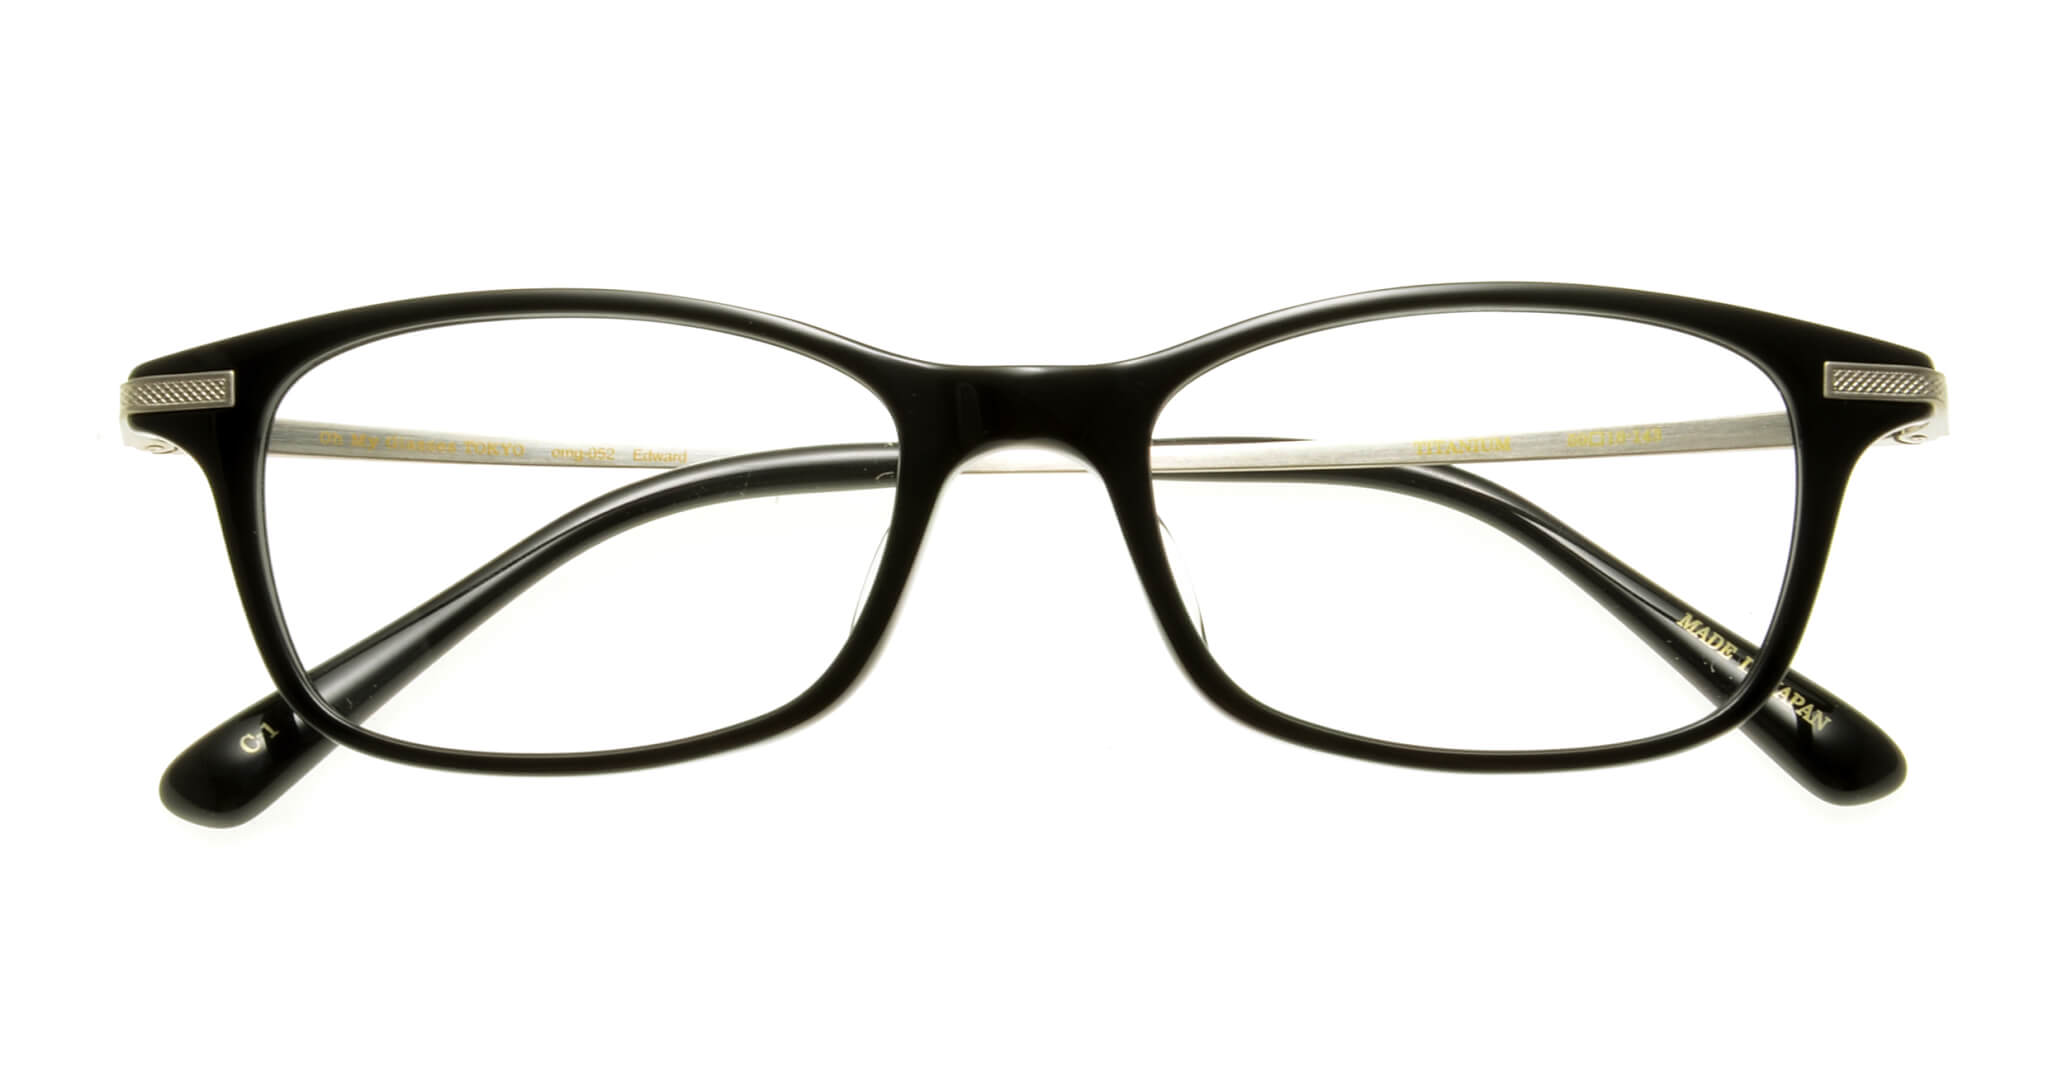 oh-my-glasses-tokyo-%e3%82%a8%e3%83%88%e3%82%99%e3%83%af%e3%83%bc%e3%83%88%e3%82%99-omg-052-1-50